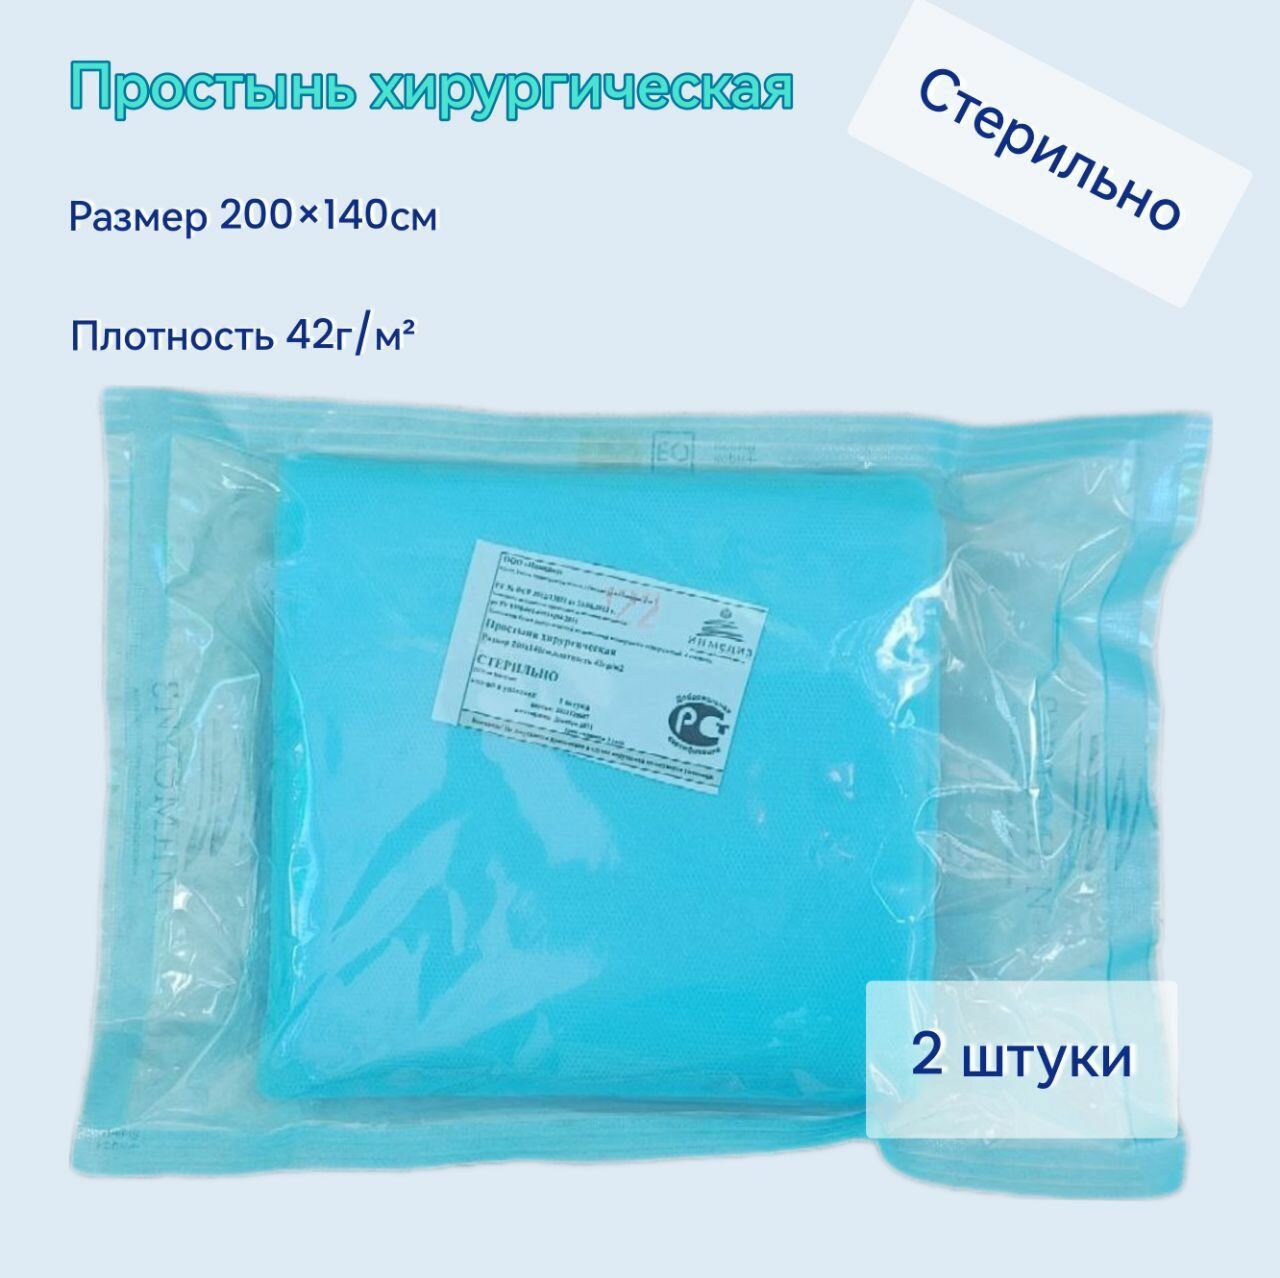 Простыня хирургическая 200х140см (СМС 42г/м2) стерильная 2 шт